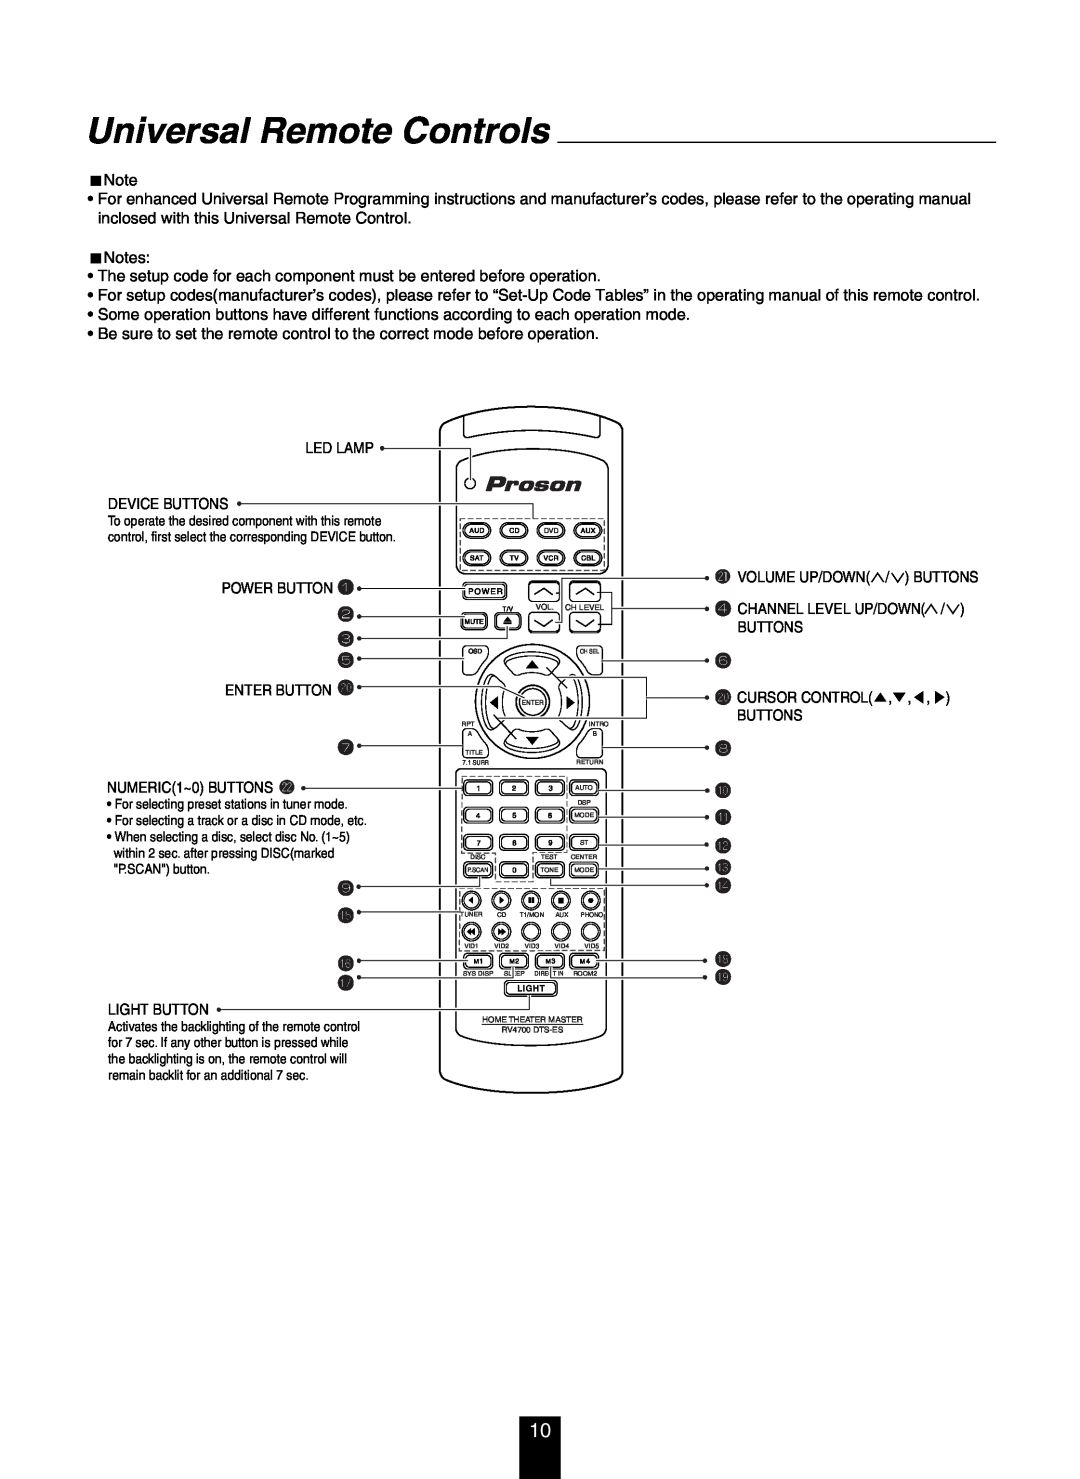 DTS RV4700 DTS-ES manual Universal Remote Controls 